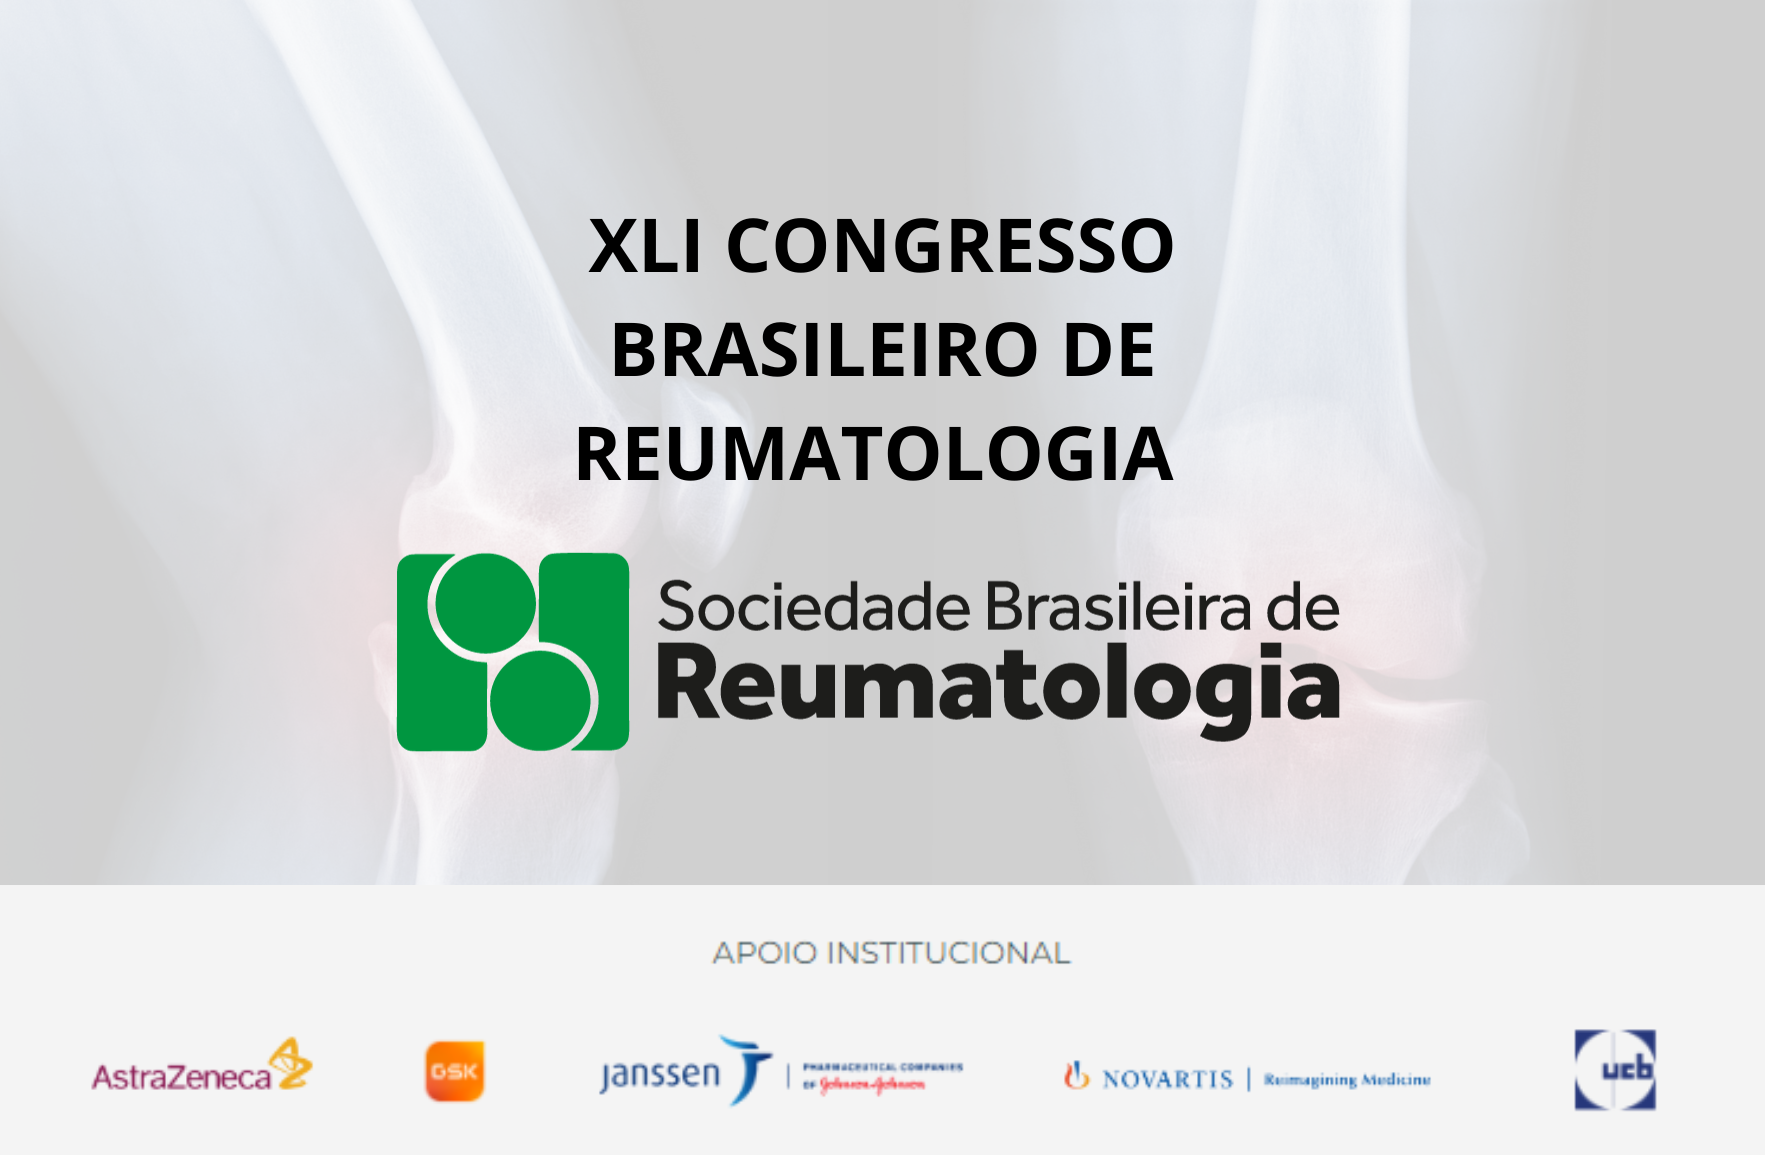 Sociedade Brasileira de Reumatologia